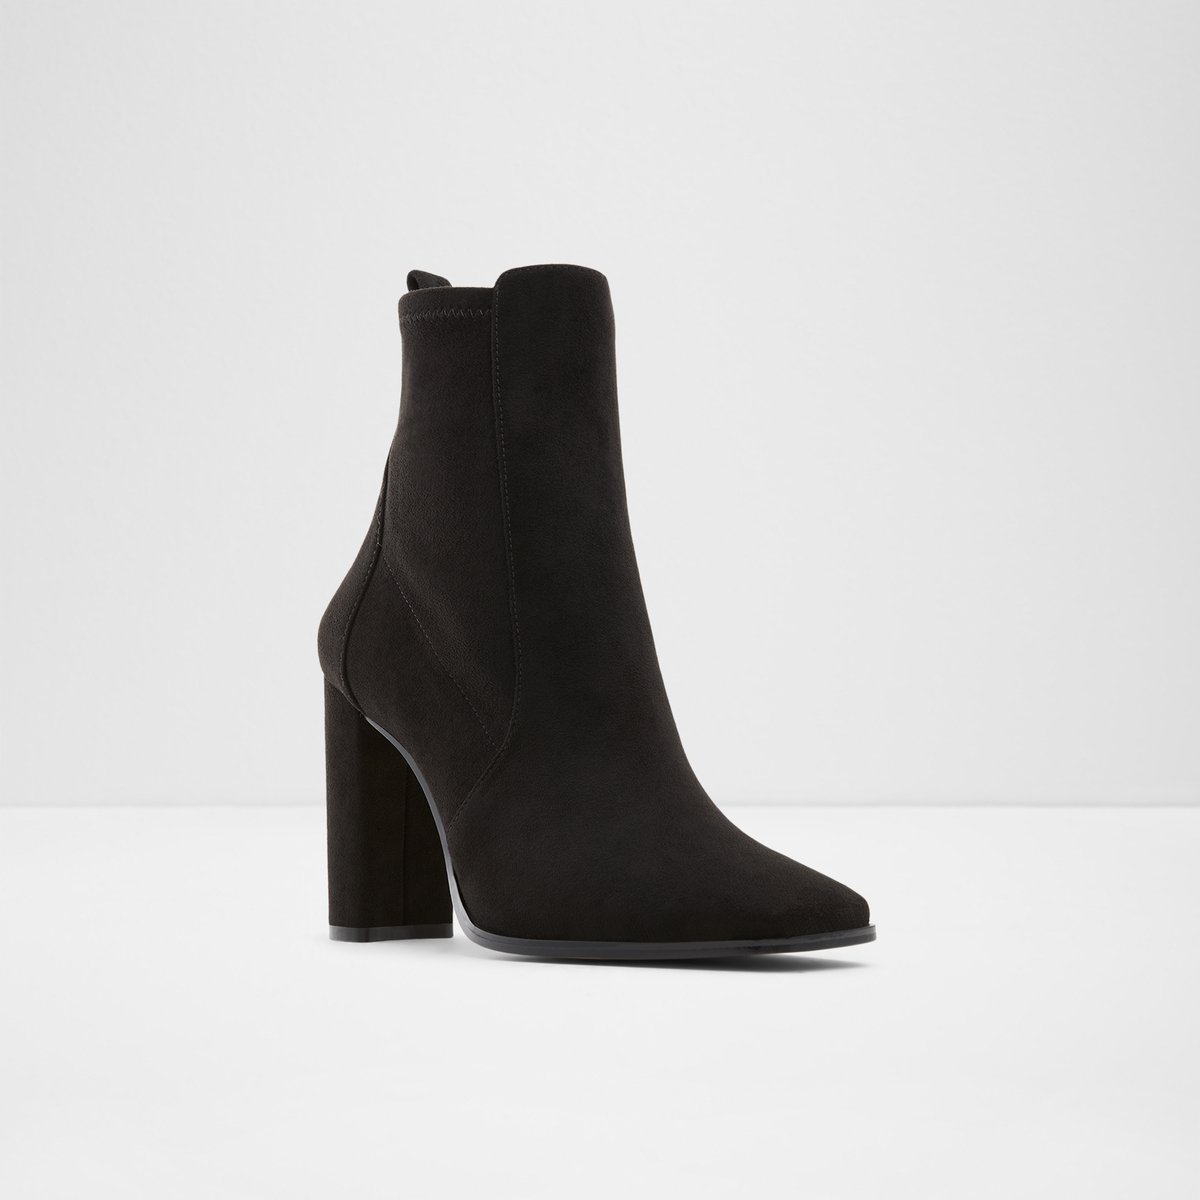 Black Textile Women's Ankle Boots & Booties | ALDO US